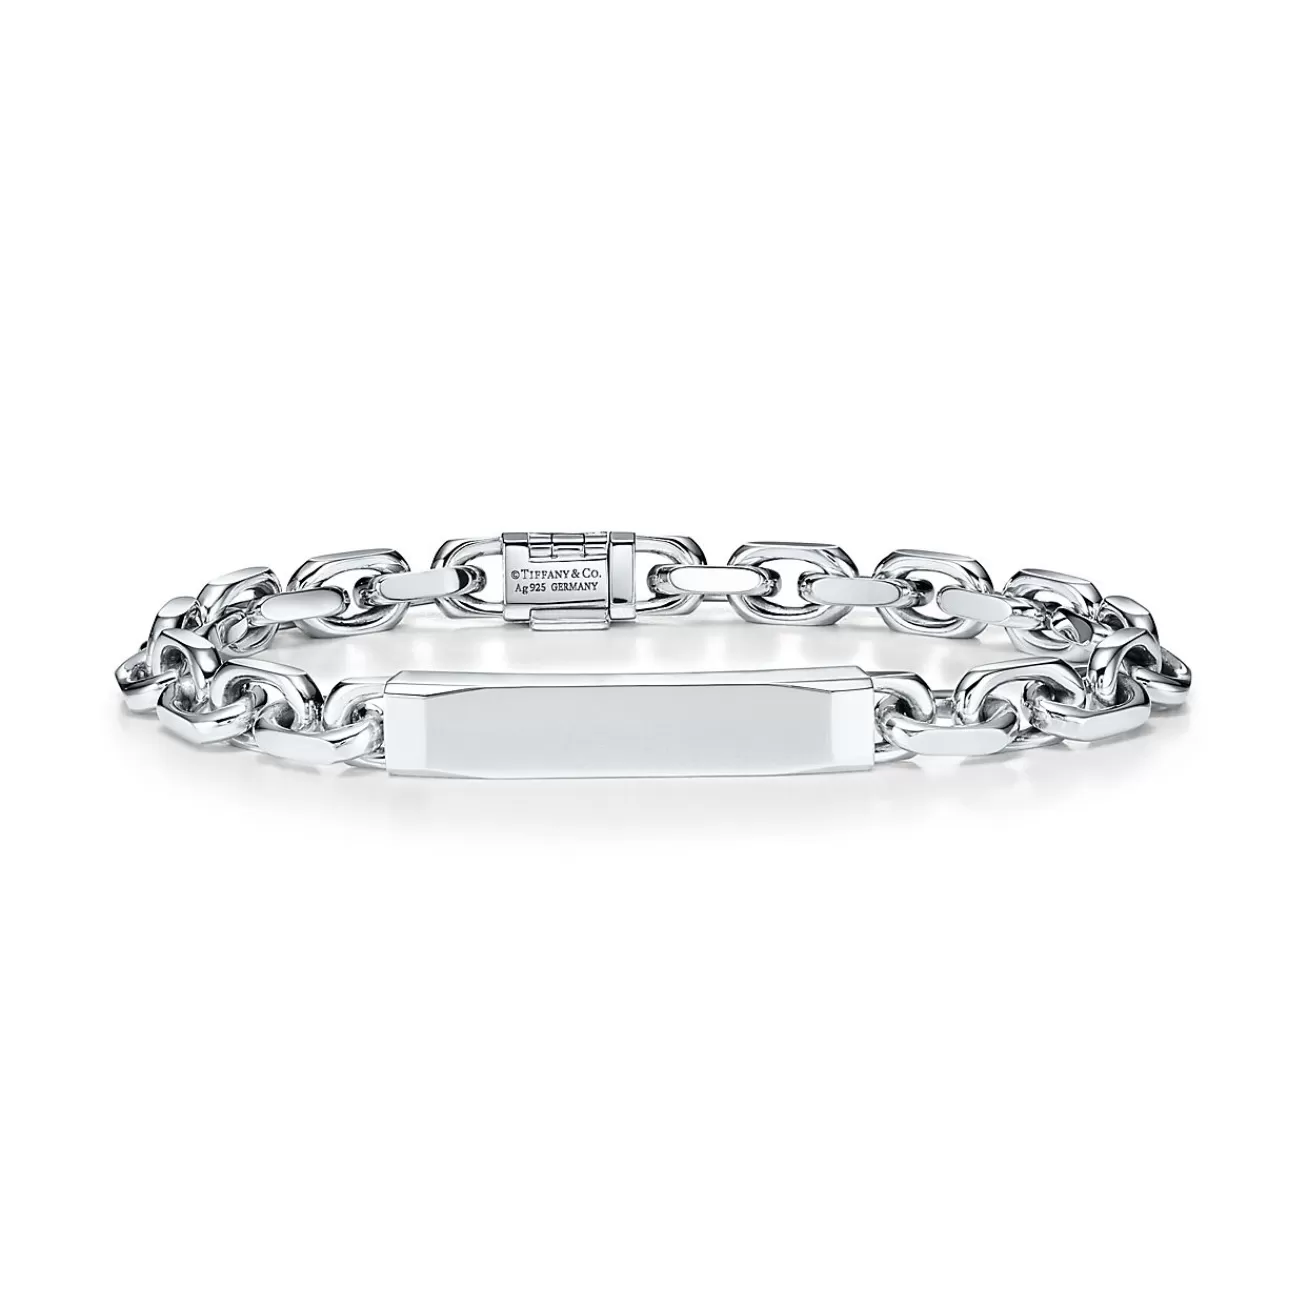 Tiffany & Co. Tiffany 1837® Makers I.D. chain bracelet in sterling silver, medium. | ^ Bracelets | Men's Jewelry